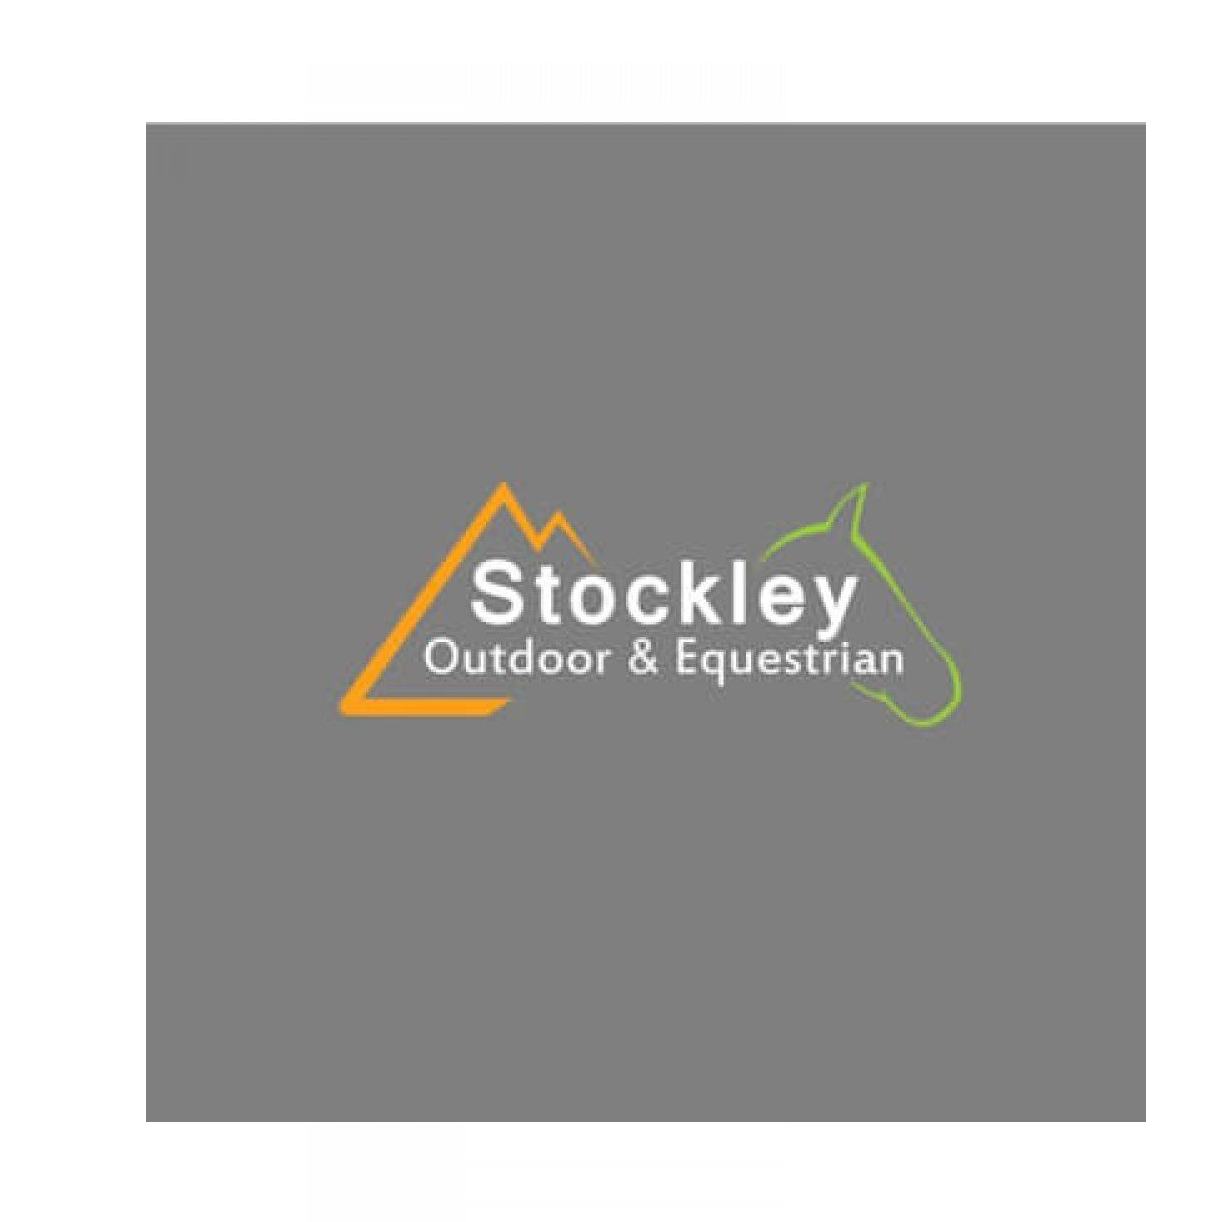 Stockley Outdoor & Equestrian